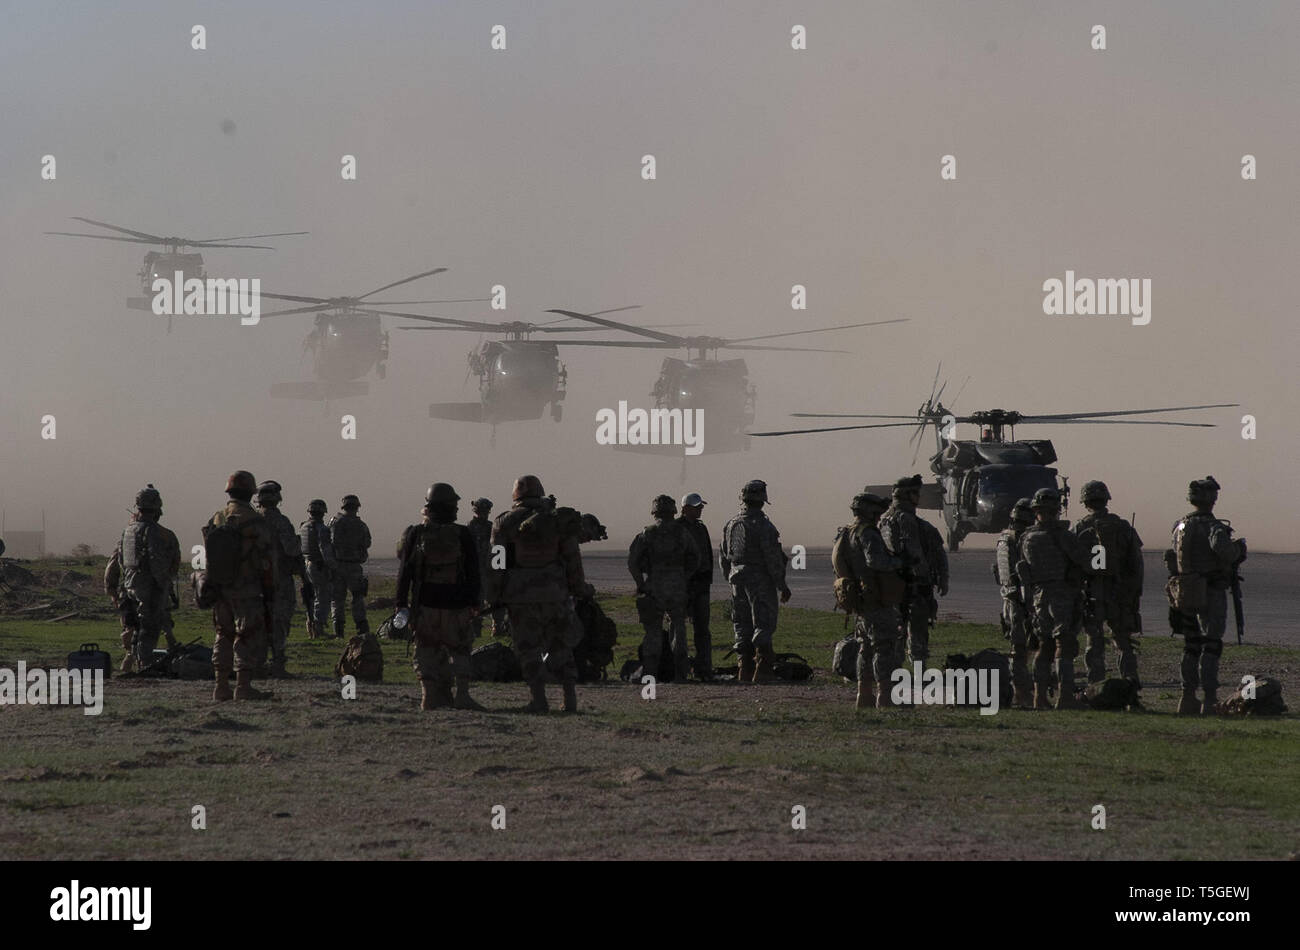 Iraq. 16 Mar, 2006. American helicópteros Black Hawk UH-60 aterrizar en una base de operaciones avanzada americana cerca de Tikrit, Irak, a la espera de ferry American y soldados de la 101ª aerotransportada y 4 divisiones de infantería y tropas iraquíes a zonas de aterrizaje para la operación Swarmer, 16 de marzo de 2006.Casi 1.500 soldados estadounidenses e iraquíes, 50 helicópteros de transporte y ataque, 200 vehículos terrestres estaban fuera durante la operación noreste de ad-Dawr y Samarra, Iraq, buscando los escondites de armas y sospechosos de ser insurgentes. Fue la misión de asalto aéreo largetst realizadas desde 2003. (Crédito de la Imagen: © Bill Putnam/ZUMA W Foto de stock